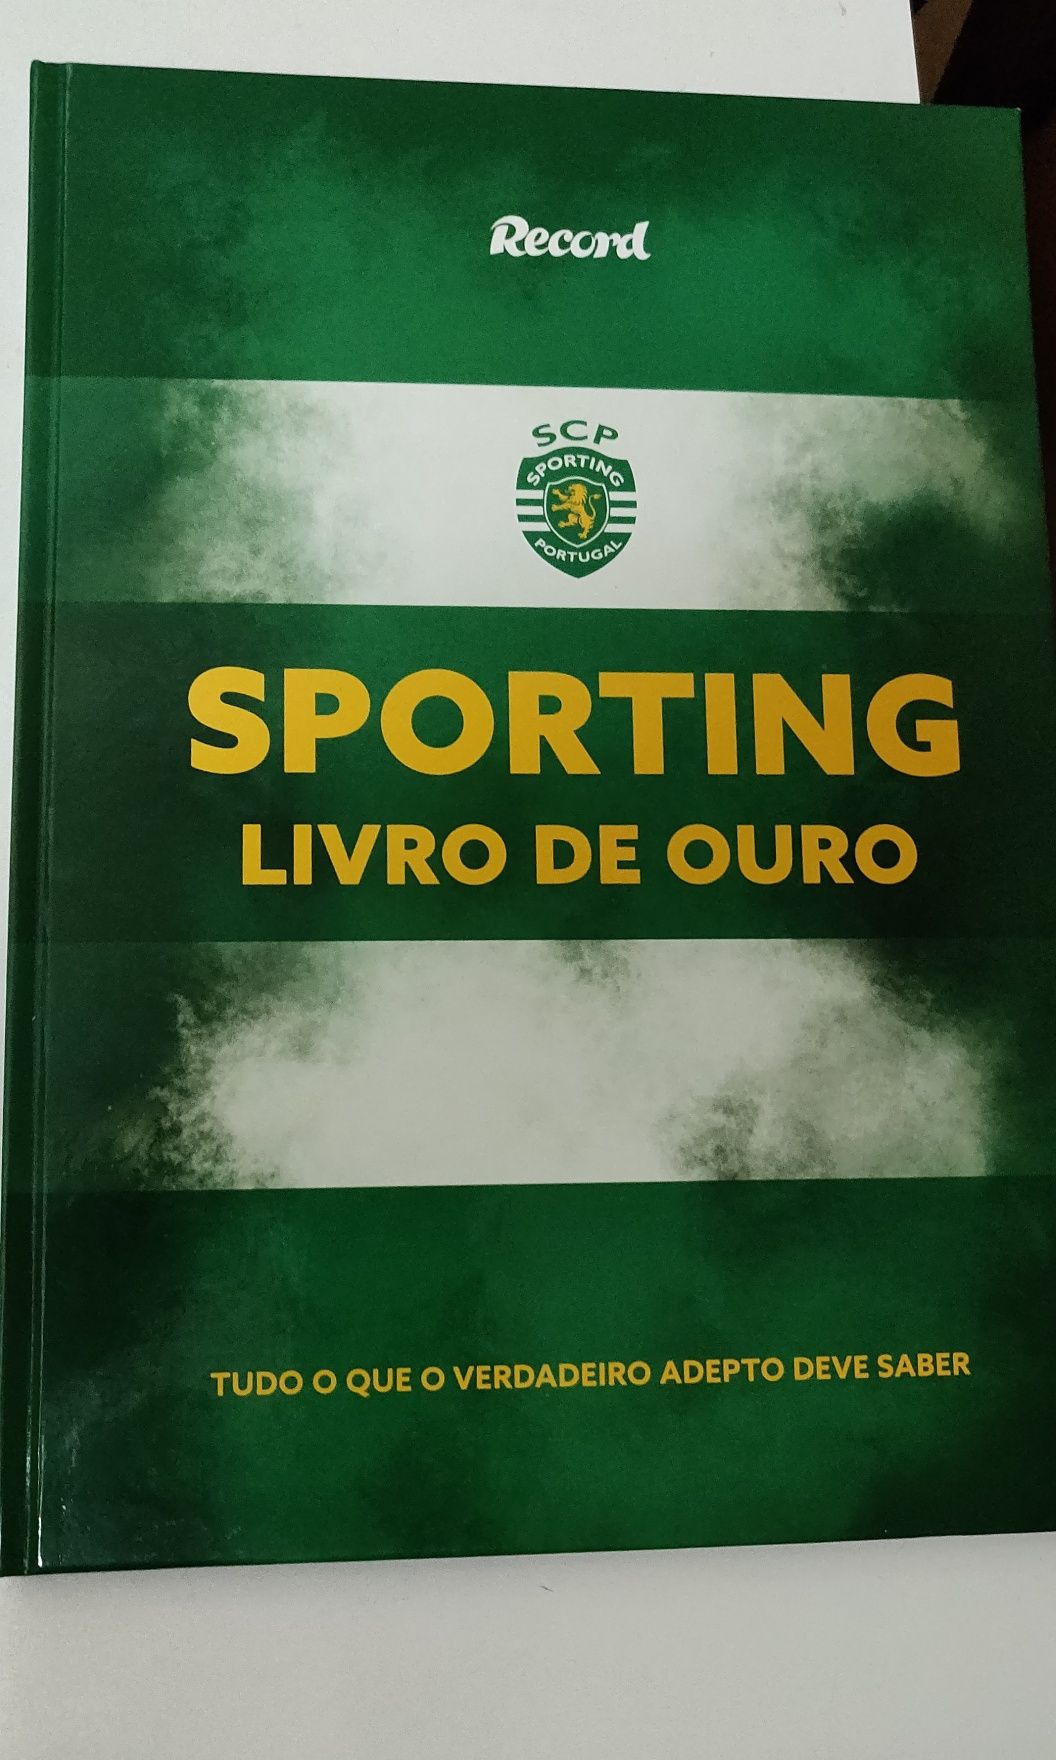 Livros cromos - Sporting e Benfica